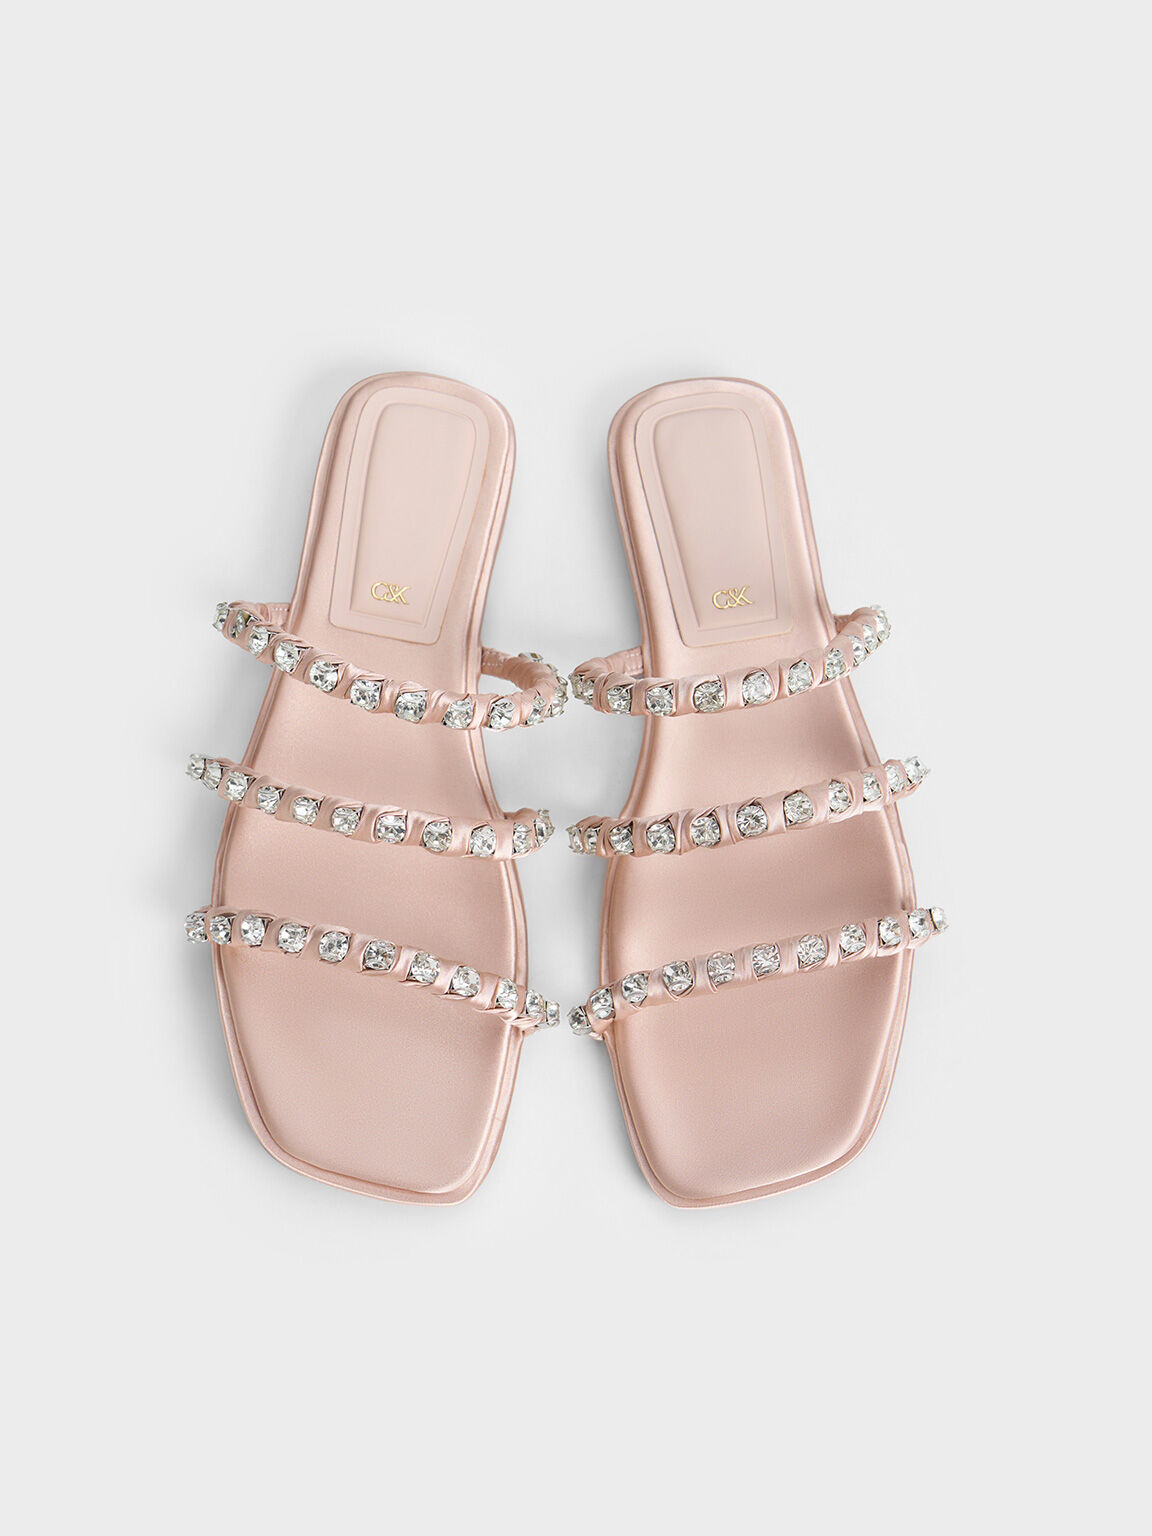 Goldie Recycled Polyester Gem-Encrusted Slide Sandals, Light Pink, hi-res